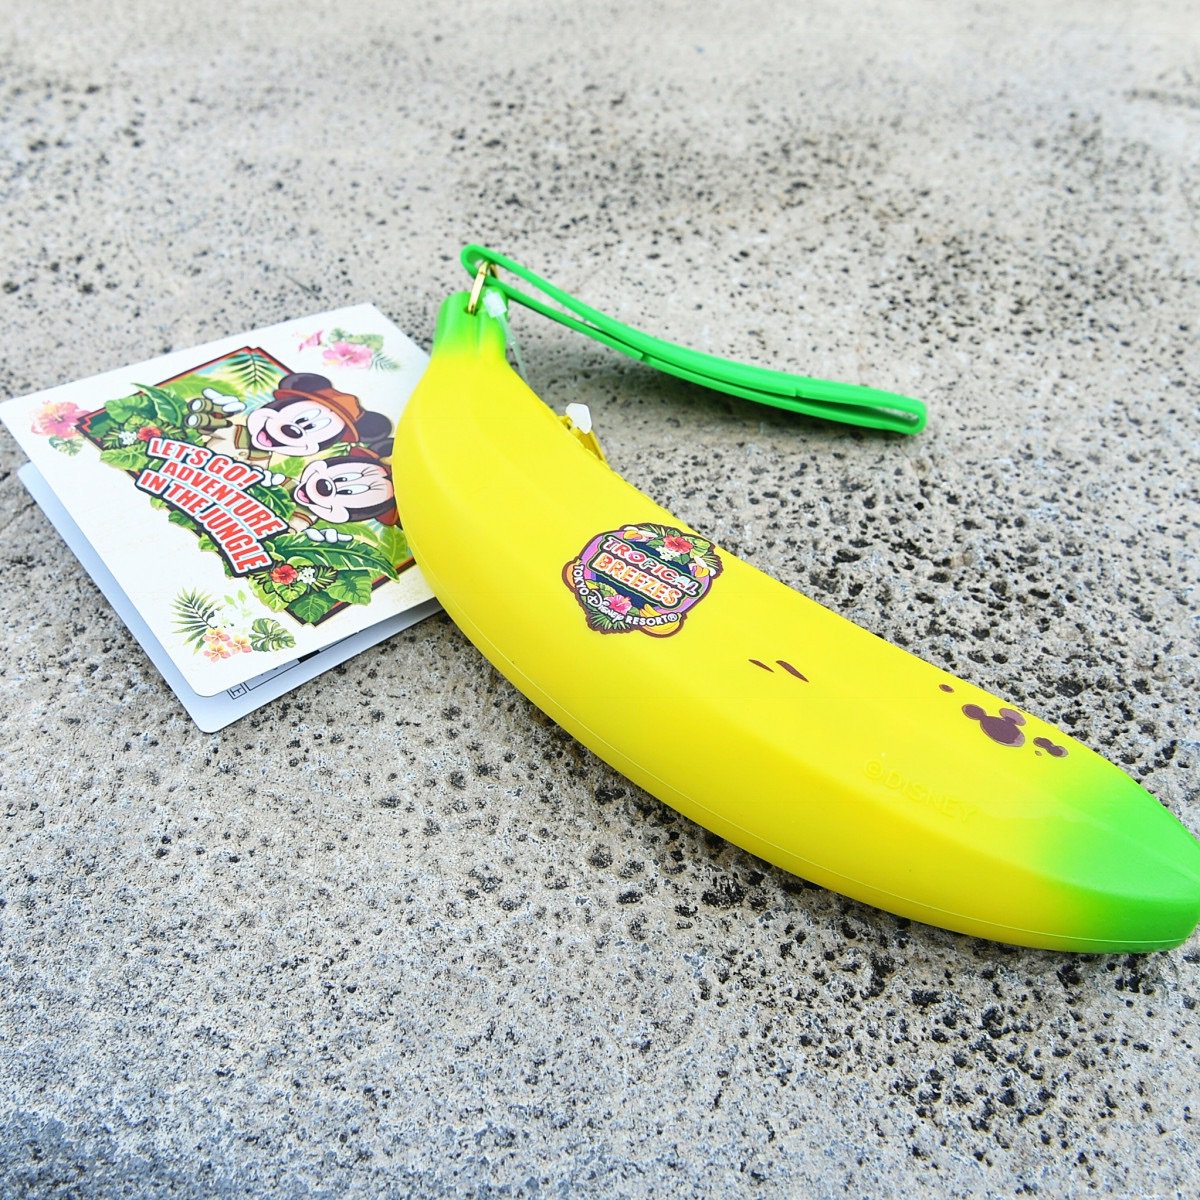 Mezzomikiのディズニーブログ Ar Twitter 東京ディズニーランドお菓子のお土産 バナナケース入りのソフトキャンディーなど4種類が本日発売されました 詳しくは T Co H3h6ndxchu T Co 33xsxlfjdt Twitter